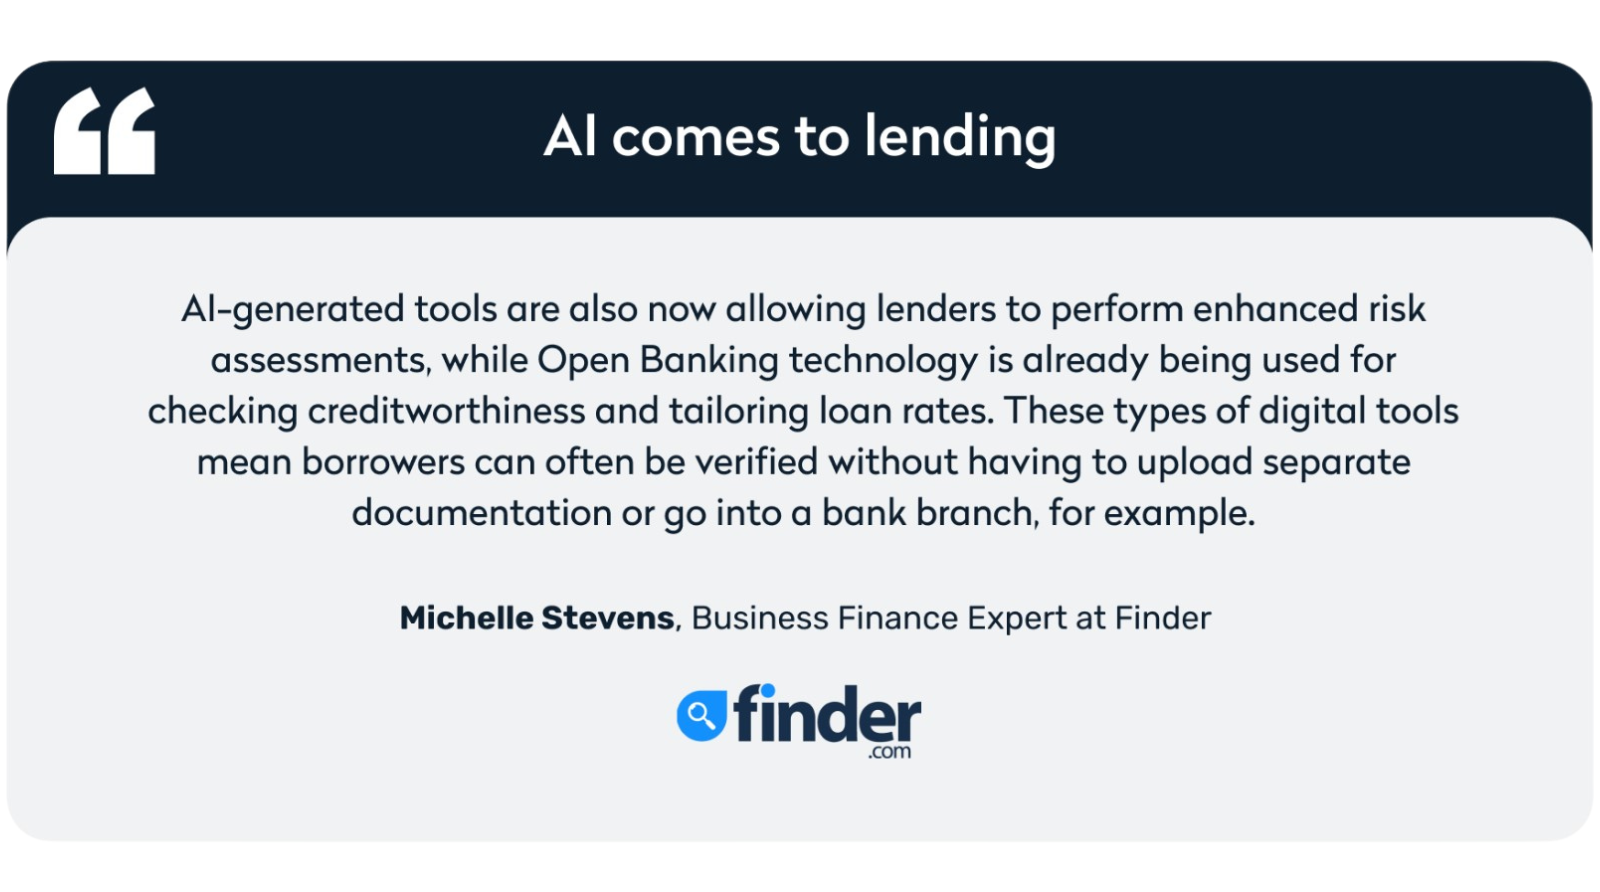 AI comes to lending